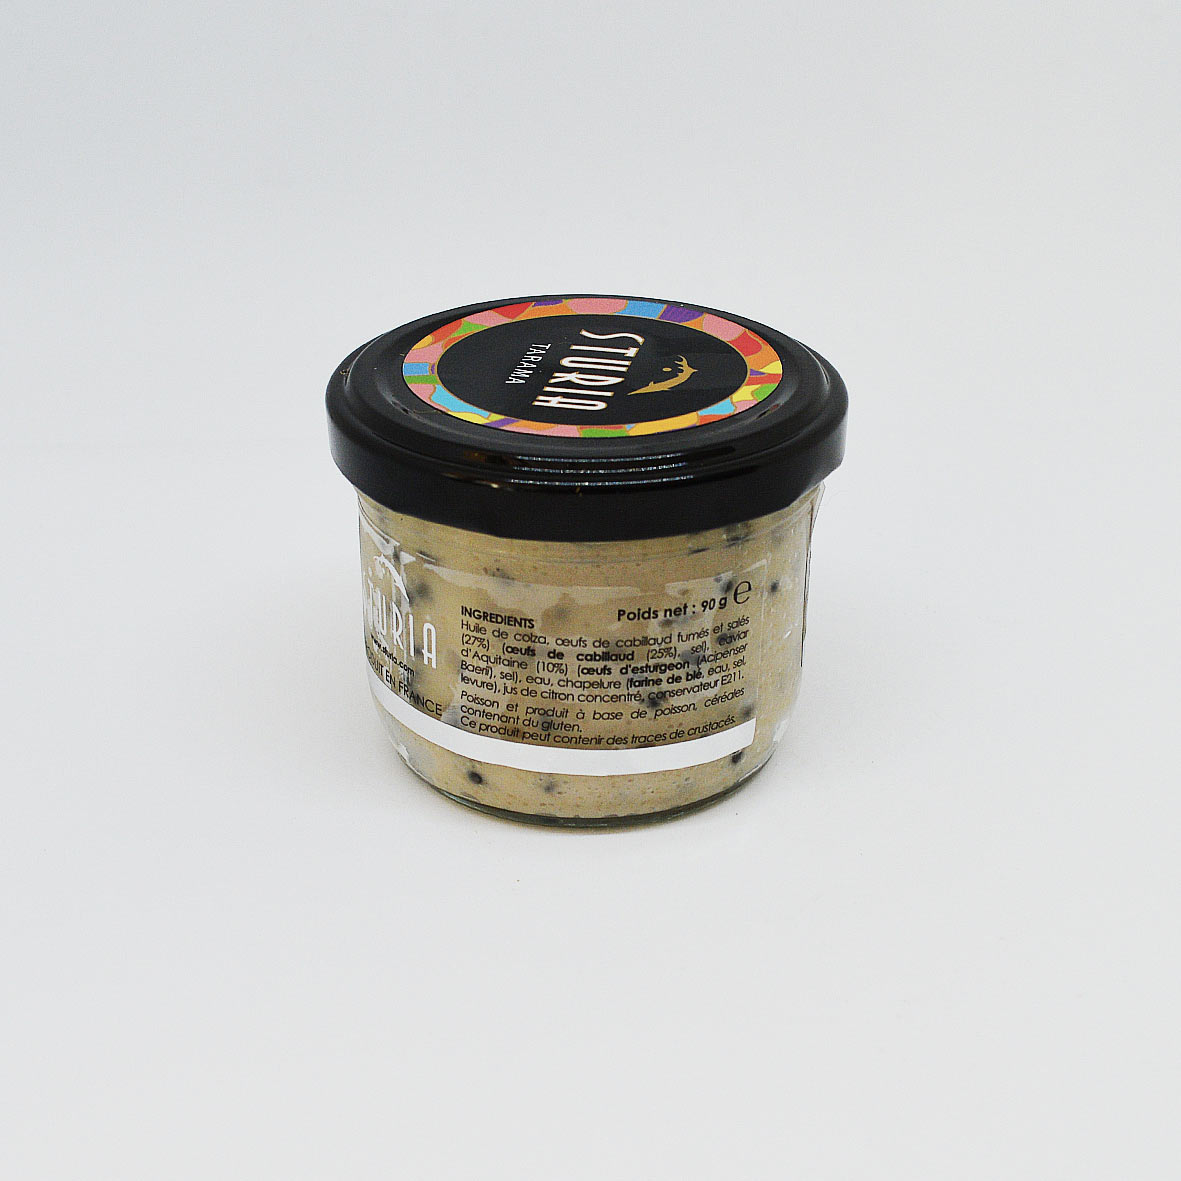 Tarama of Caviar, Sturia